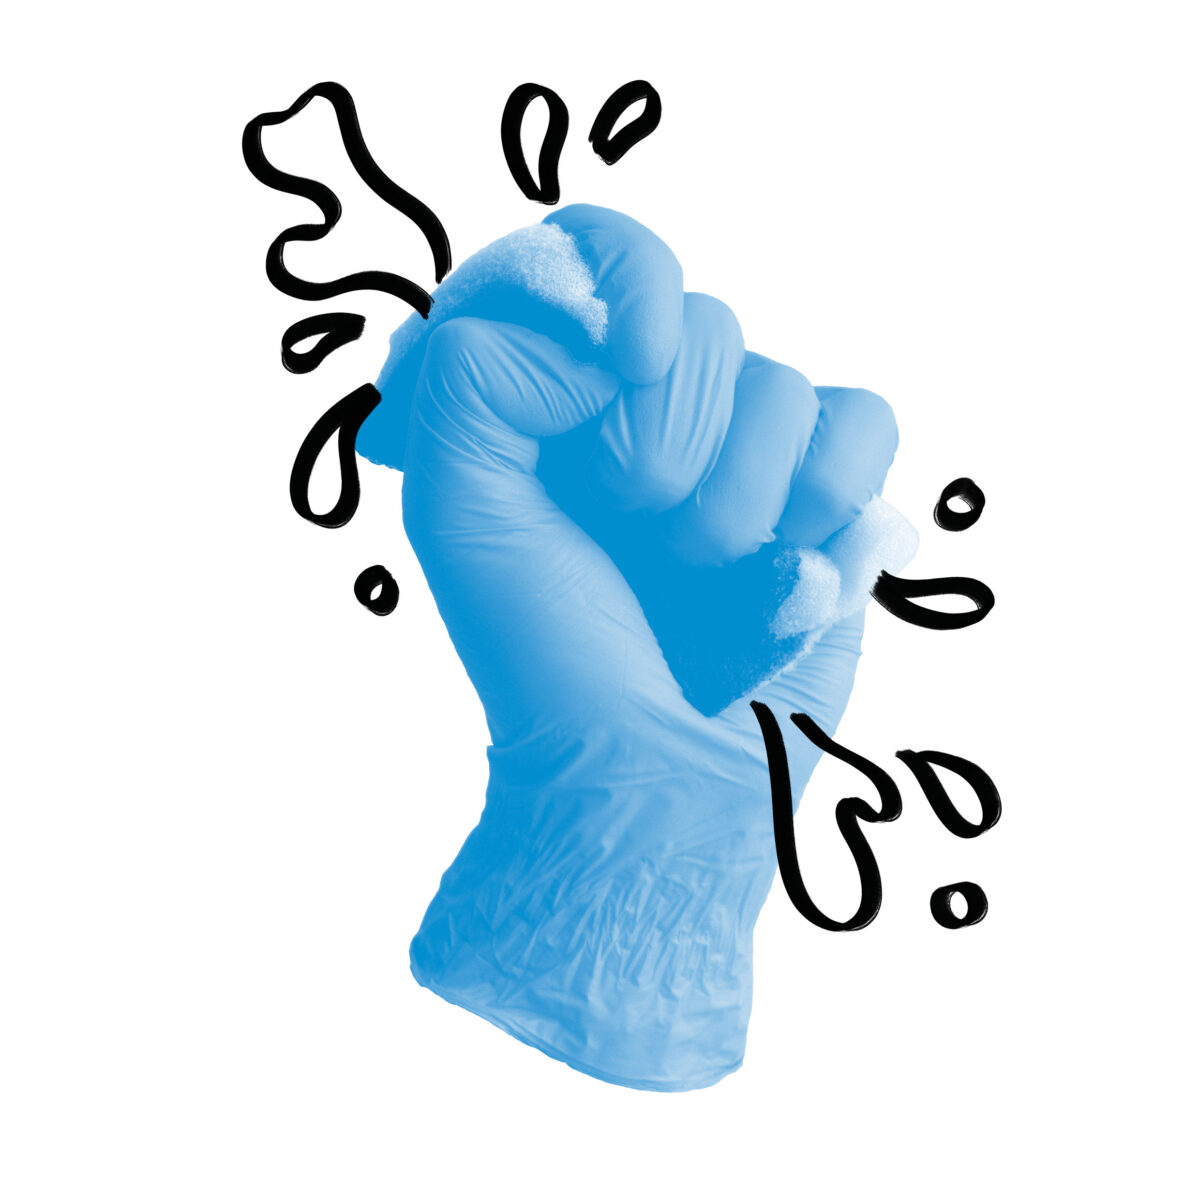 Eine Hand in blauem Hygienehandschuh macht eine Faust und drückt dabei auf einen Küchenschwamm in Blautönen. mit schwarzem Marker sind darum die Spritzer aus dem Schwamm gezeichnet